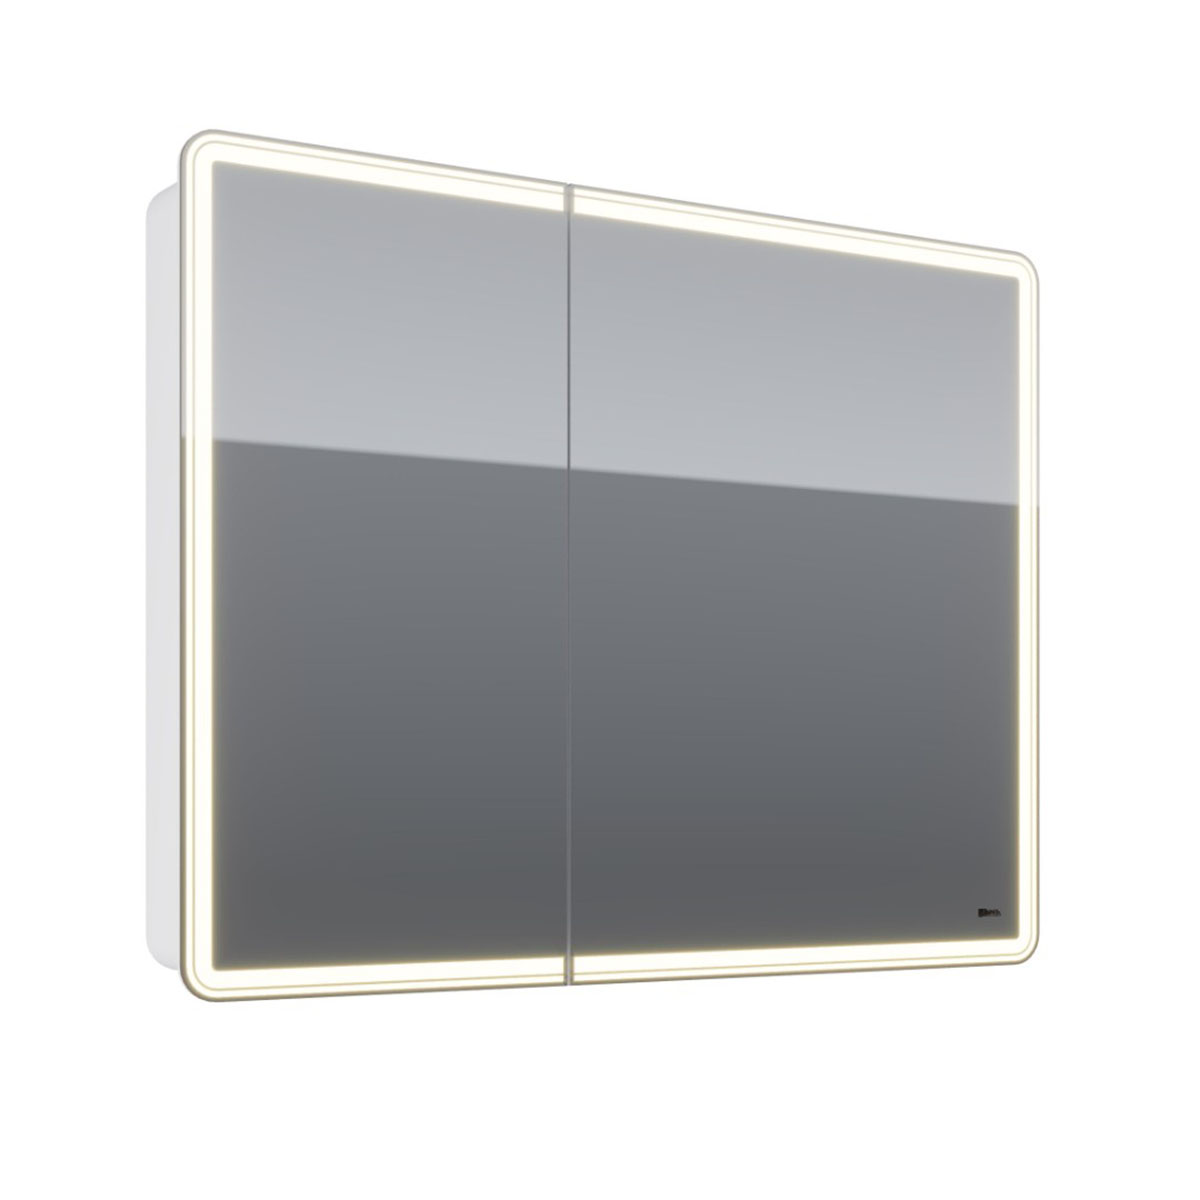 Шкаф зеркальный Lemark ELEMENT 100х80 см 2-х дверный, с подсветкой, с розеткой, цвет корпуса: Белый